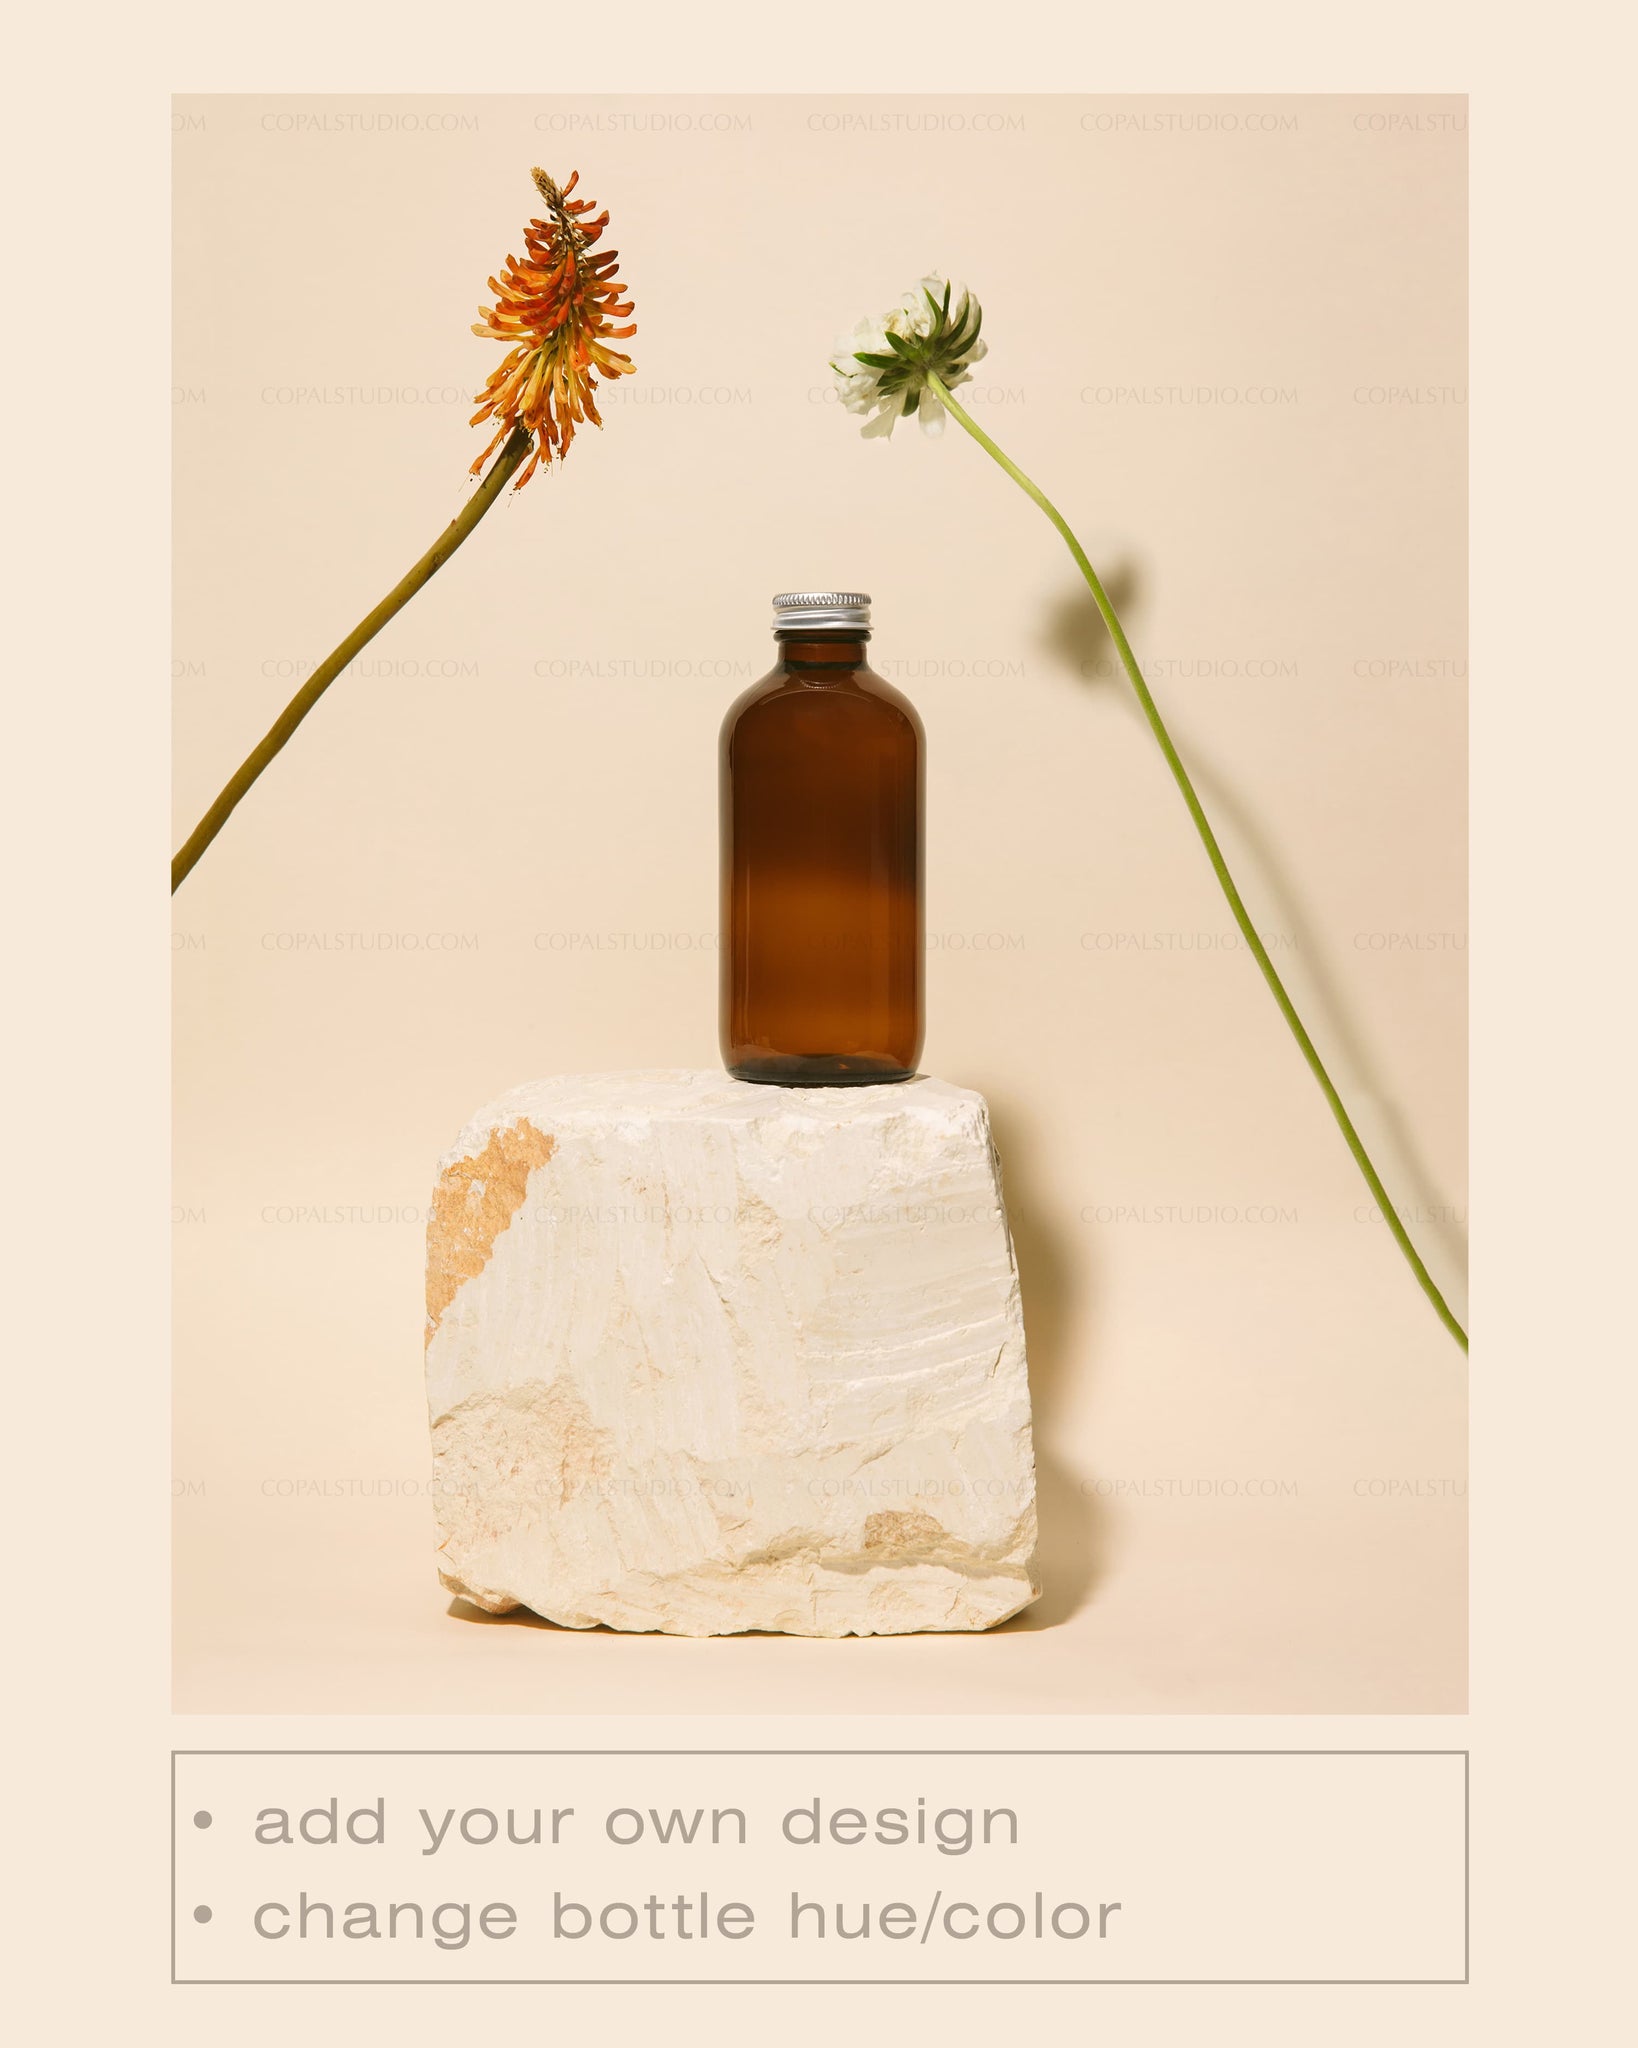 Round Amber Bottle Mockup No. 12 - Copal Studio Packaging Mockups For Designers